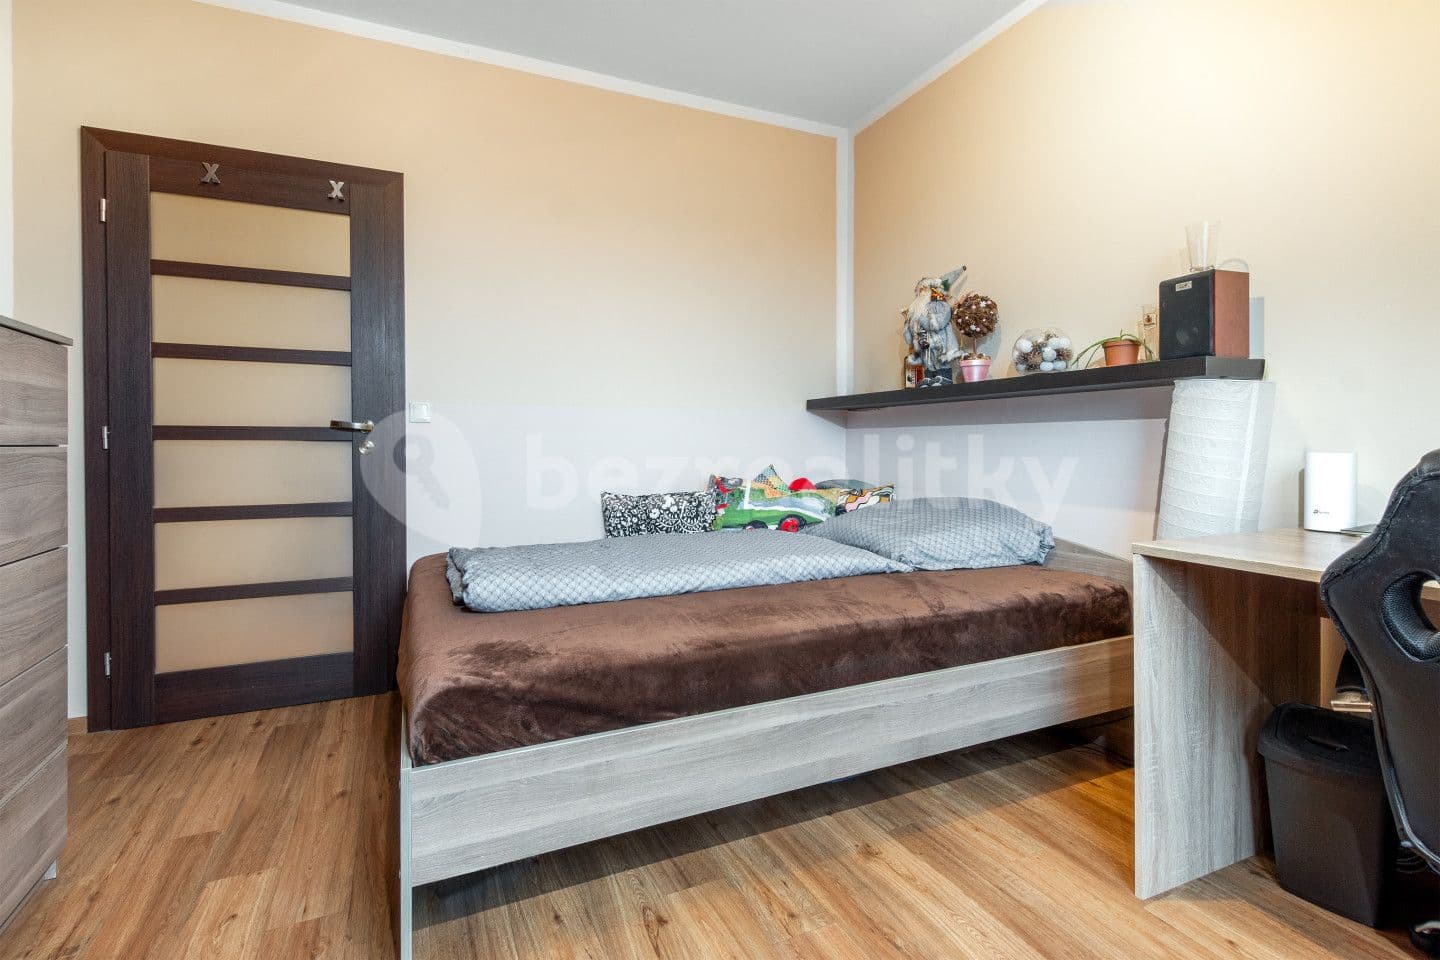 3 bedroom flat for sale, 72 m², Tovární, Skřivany, Královéhradecký Region